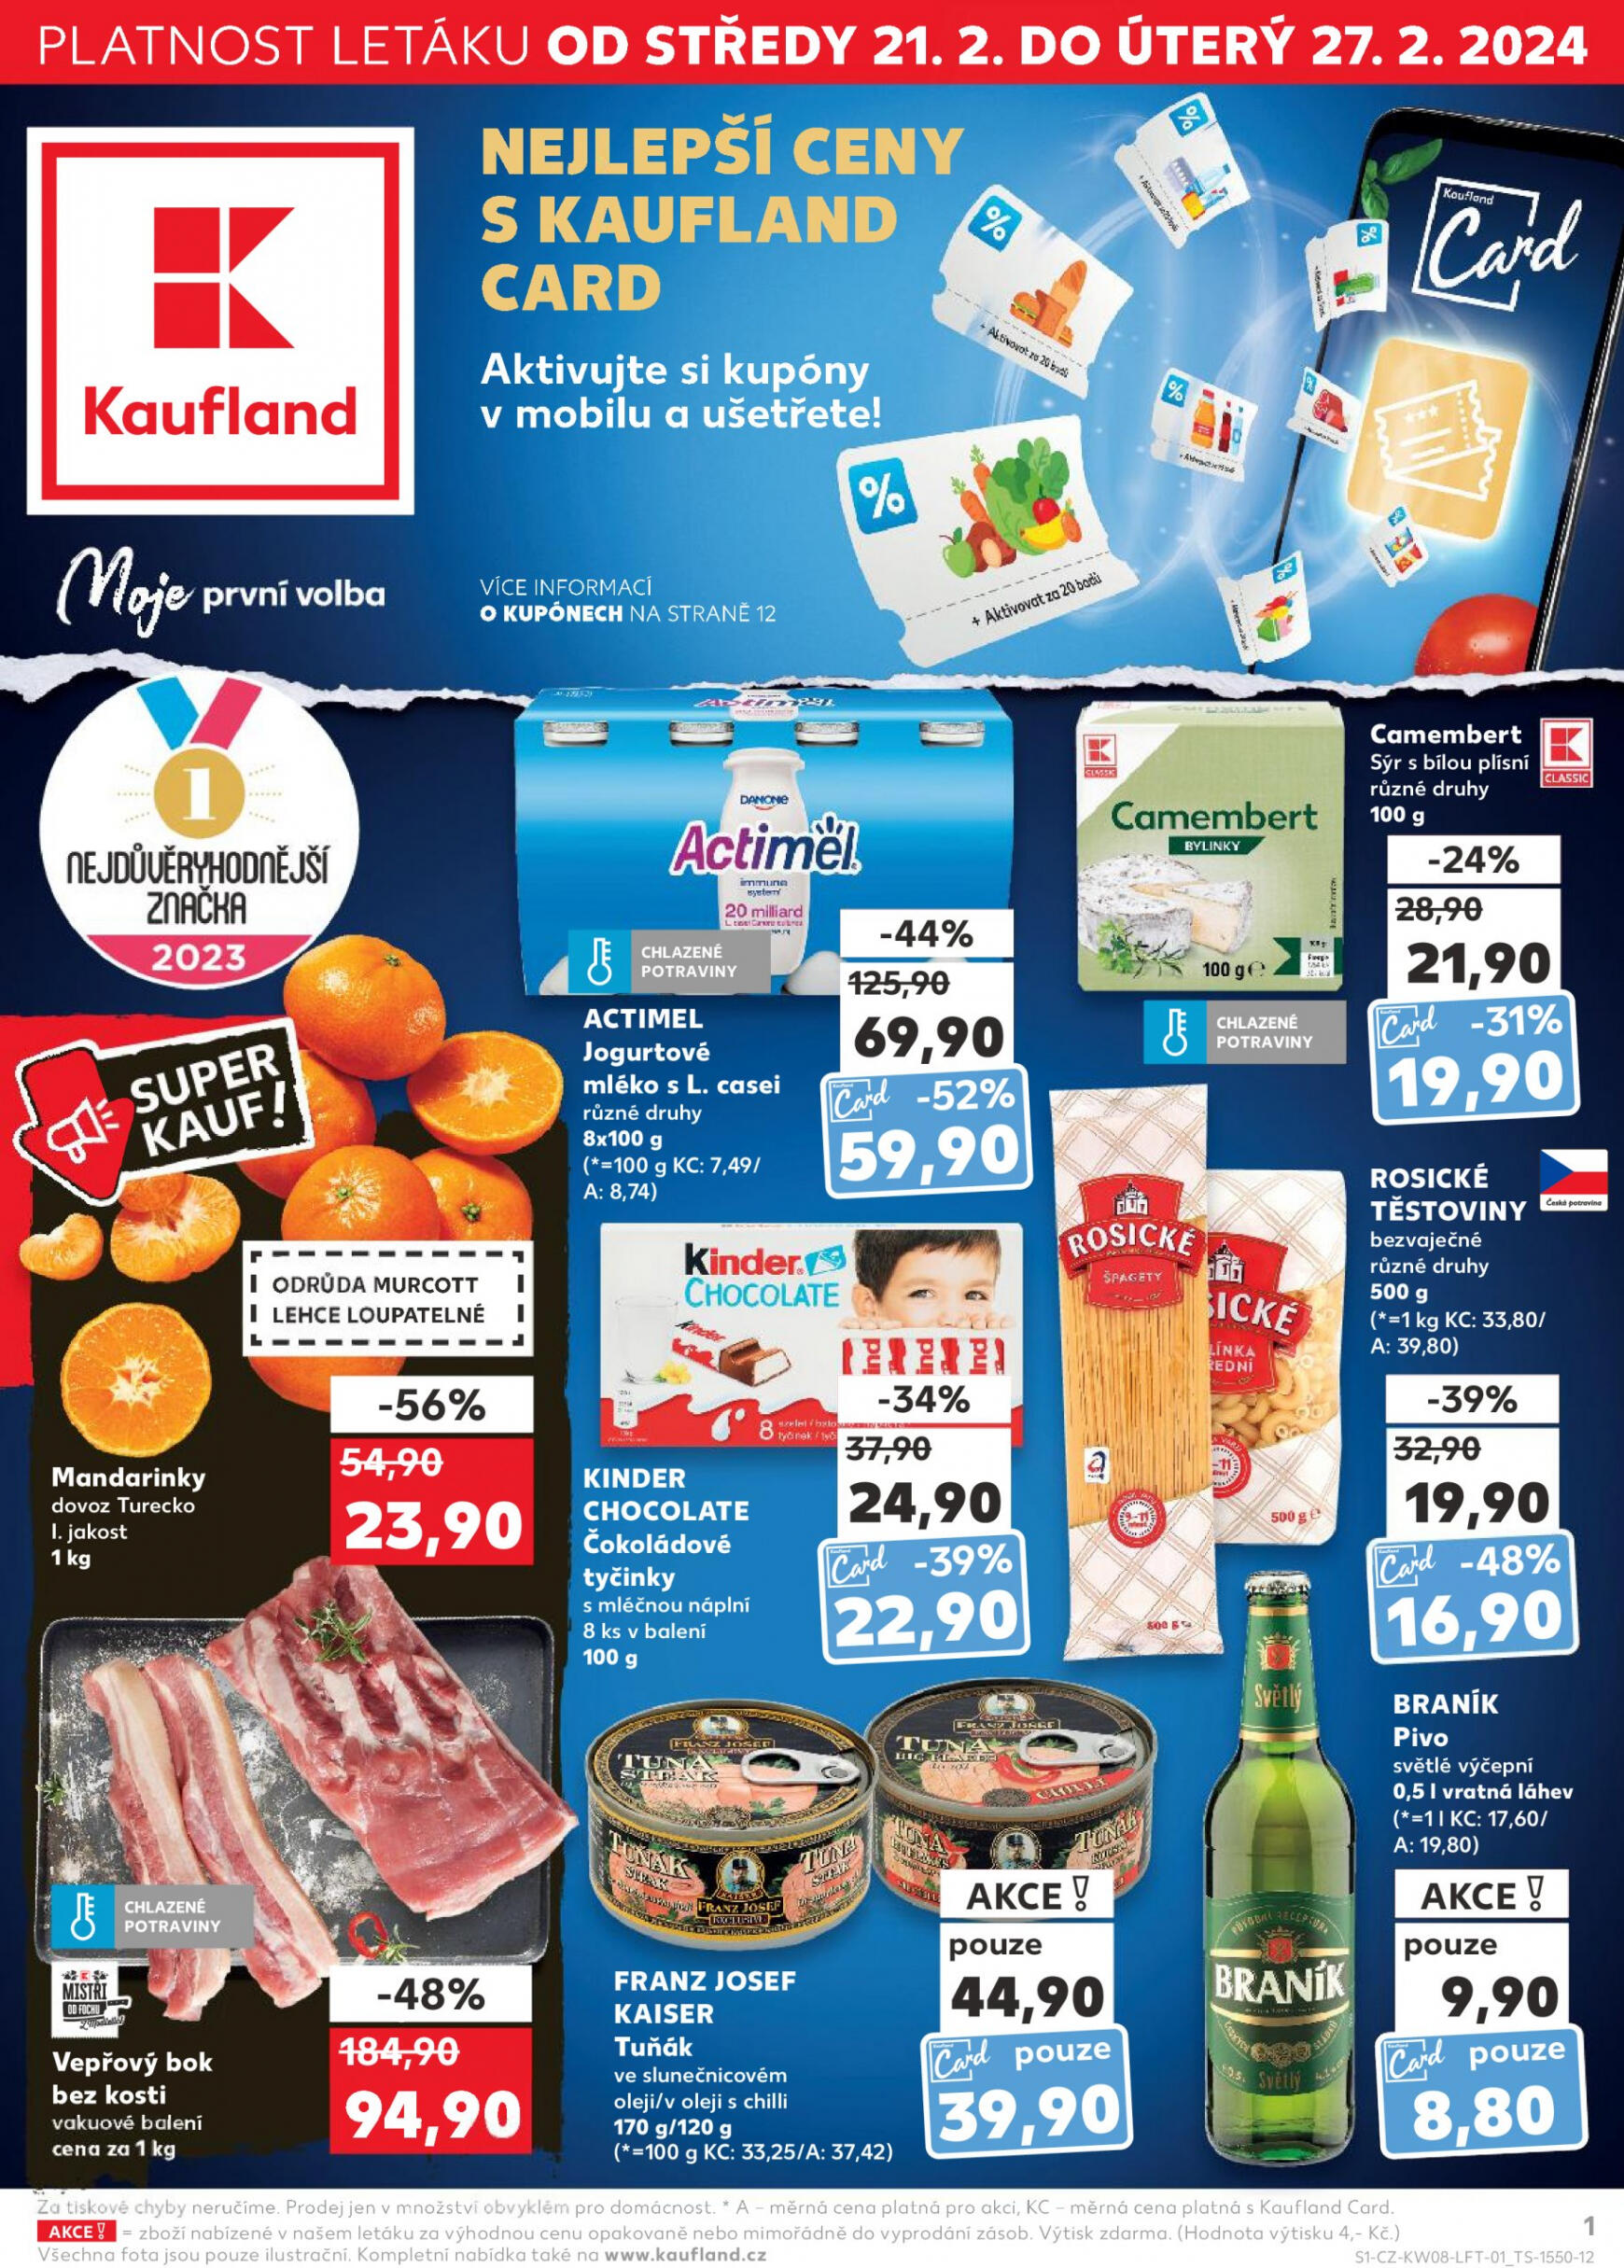 kaufland - Kaufland platný od 21.02.2024 - page: 1